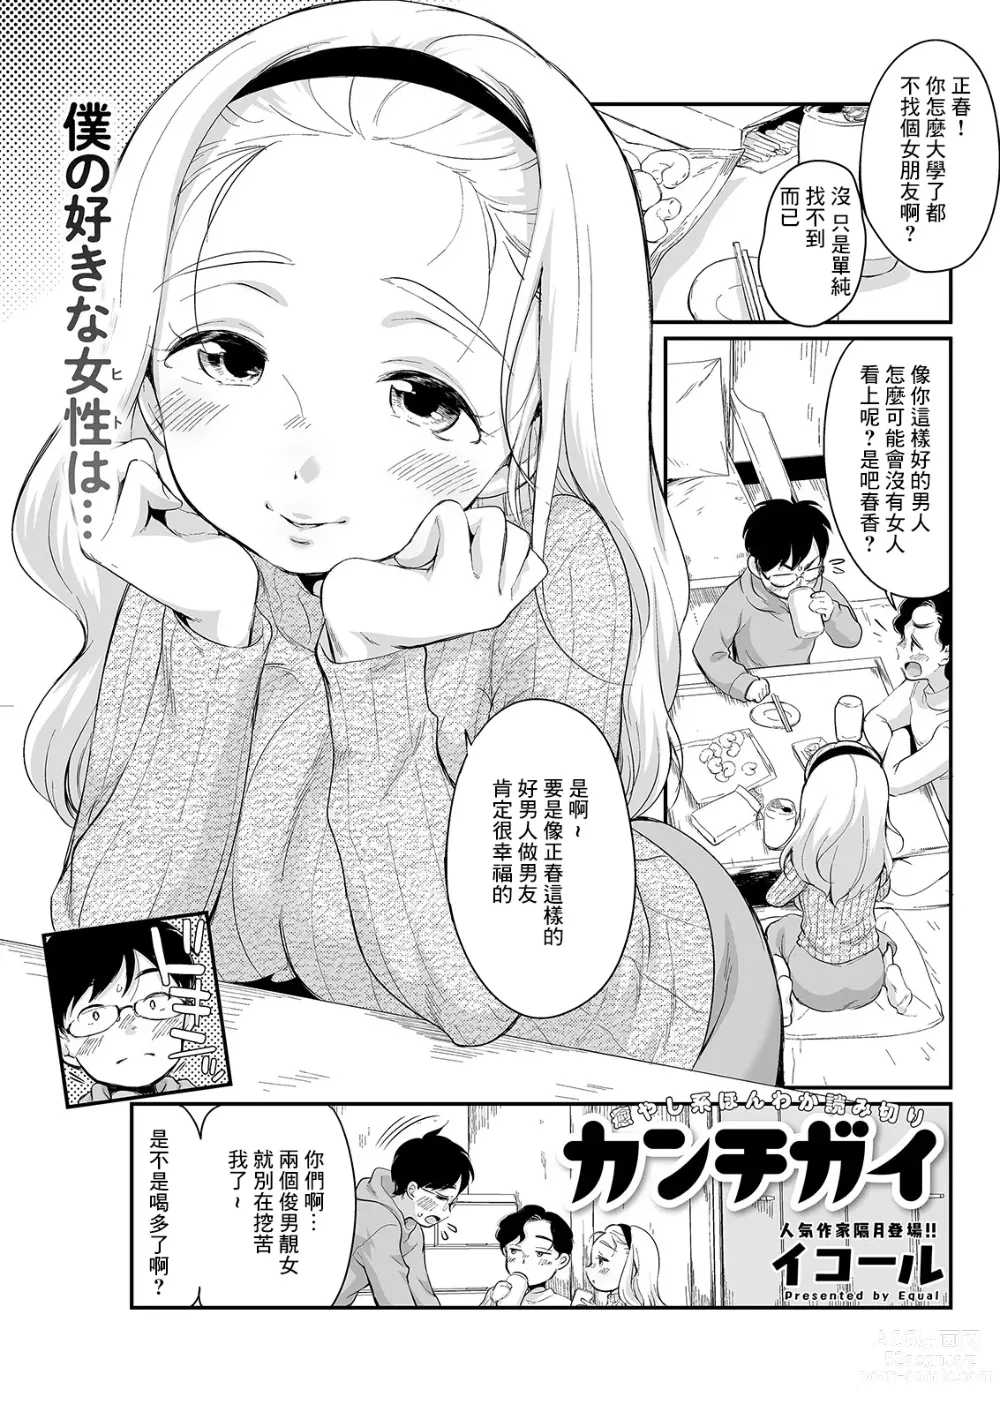 Page 1 of manga Kanchigai